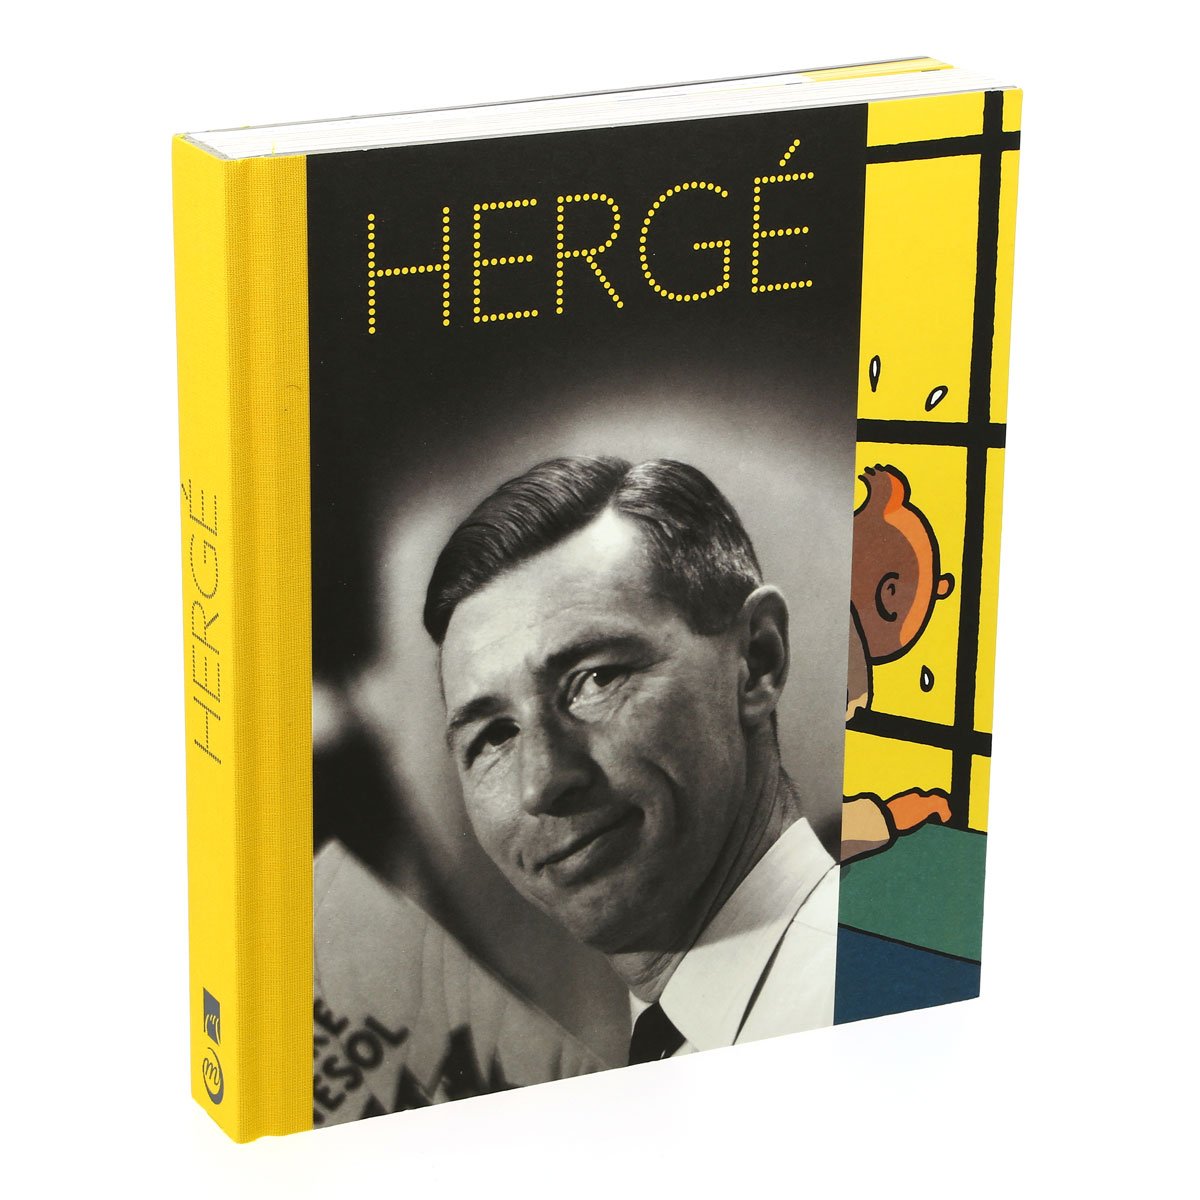 Hergé - catalog of the Paris exhibition